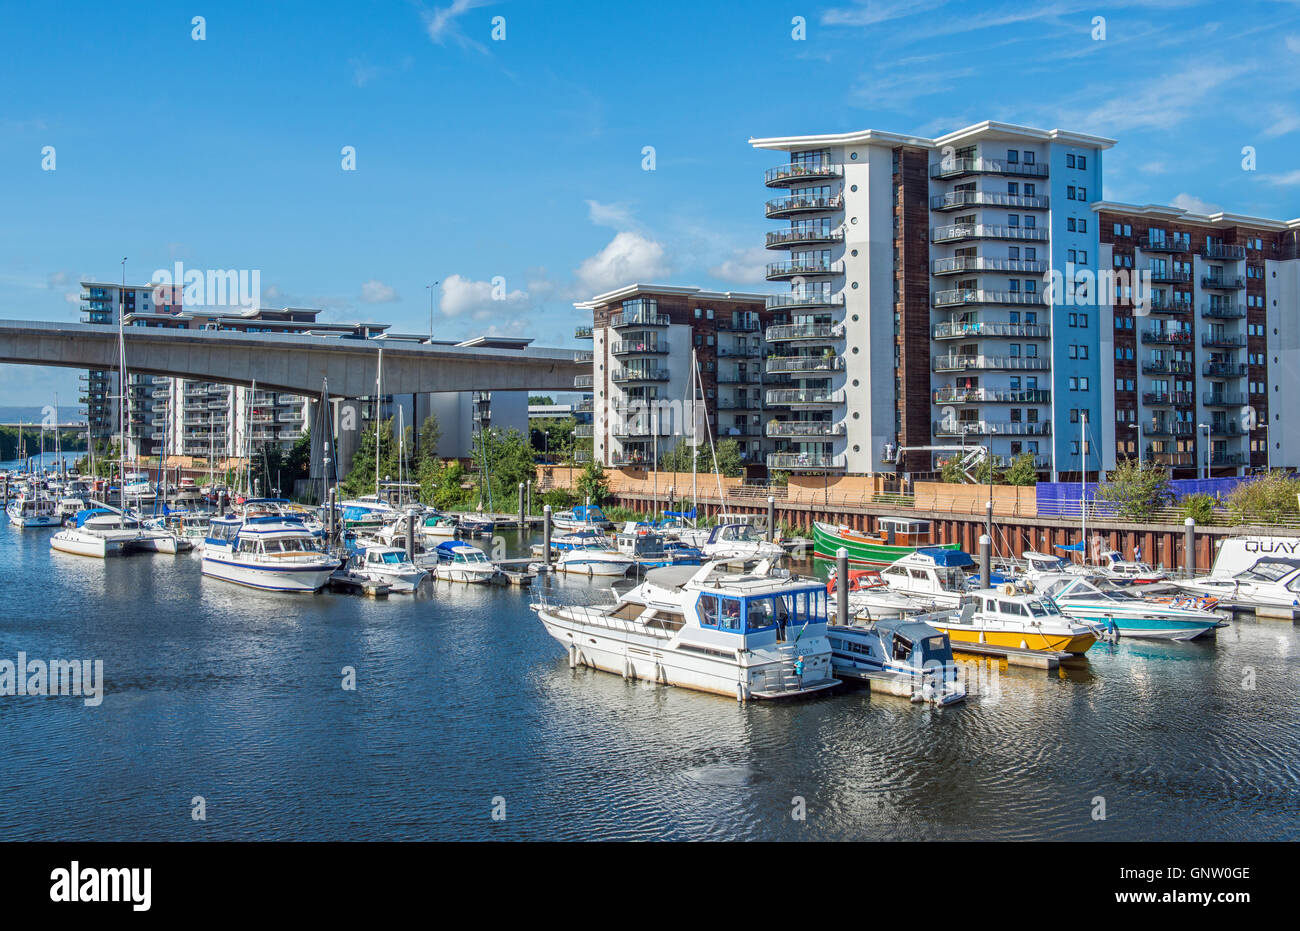 Cardiff-Marina am Fluss Ely, zwischen Cardiff und Penarth in Süd-Wales, voll von Freizeitbooten Stockfoto